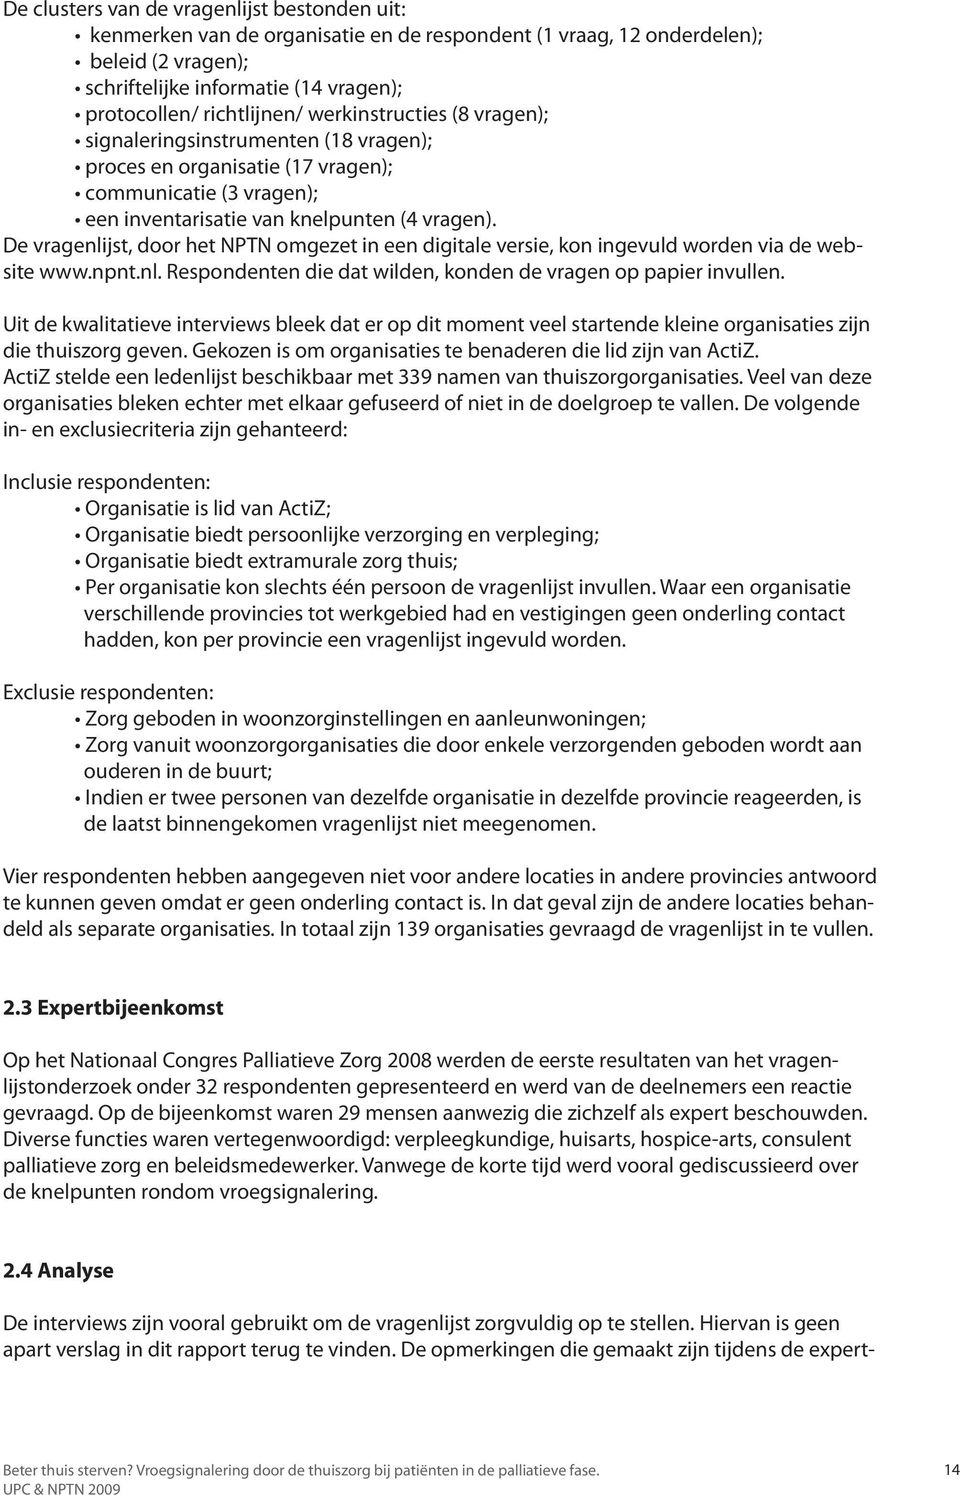 De vragenlijst, door het NPTN omgezet in een digitale versie, kon ingevuld worden via de website www.npnt.nl. Respondenten die dat wilden, konden de vragen op papier invullen.